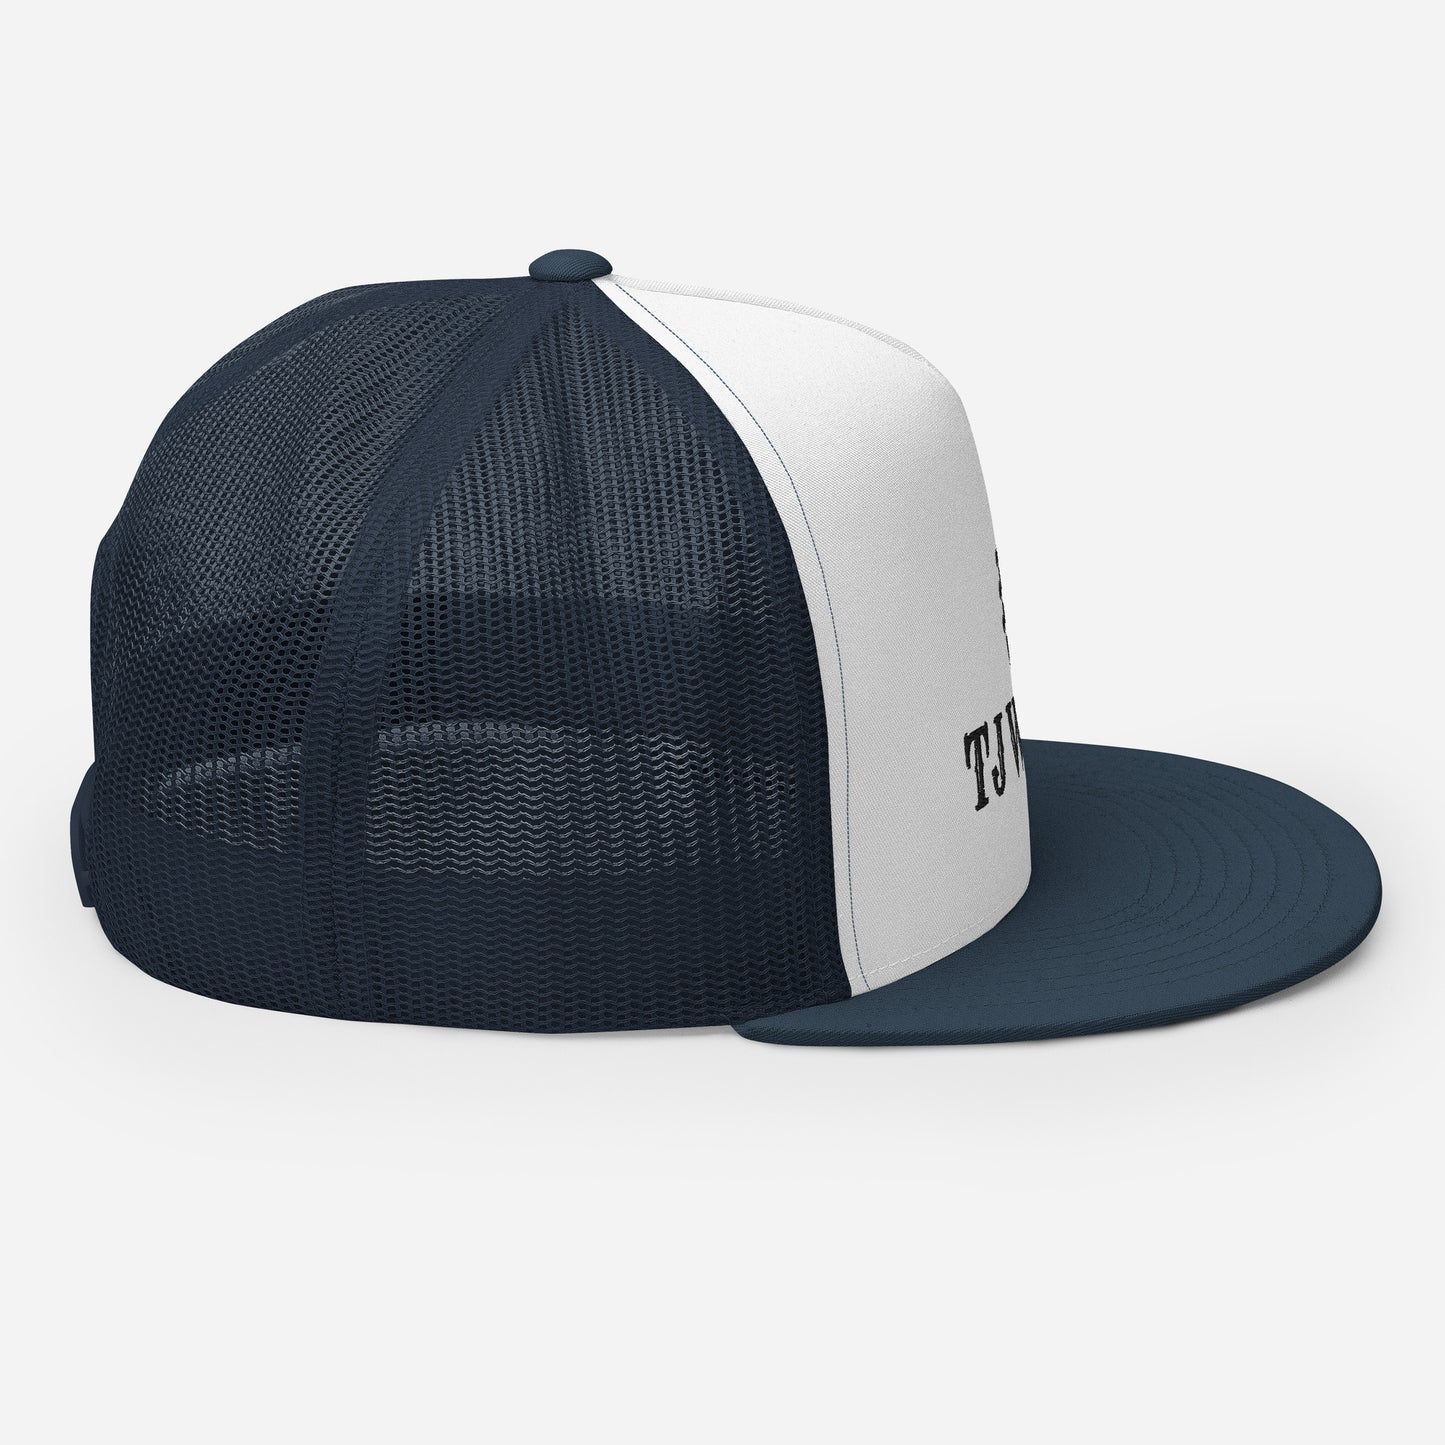 TJ OG Trucker Hat